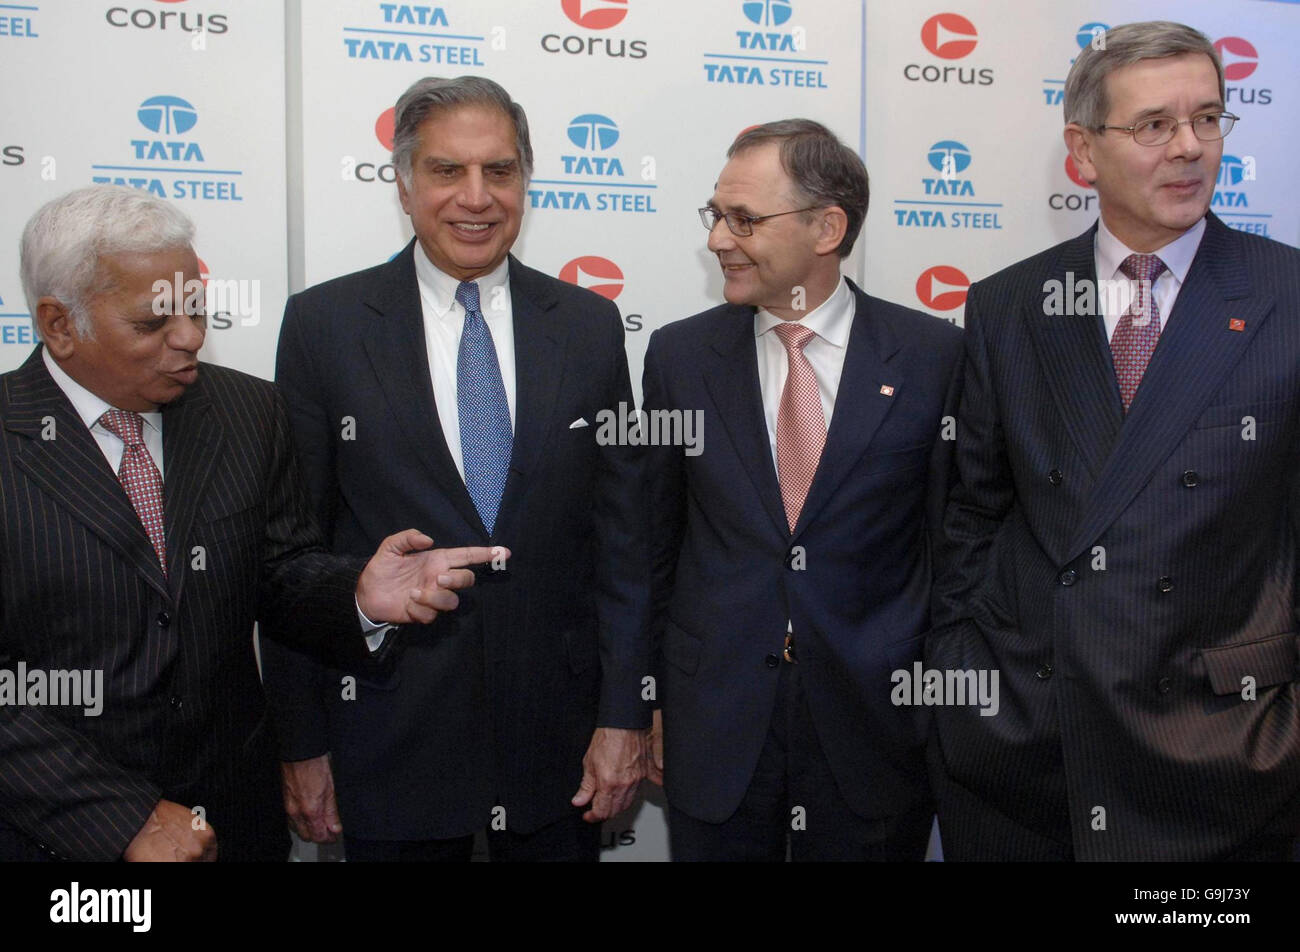 (De gauche à droite) : B Mutharaman, Directeur général de Tata Steel; Ratan Tata, Président de Tata Steel; James Leng, Président de Corus et Philippe Varin, Directeur général de Corus lors d'une conférence de presse à Londres pour annoncer la fusion des deux sociétés. Banque D'Images